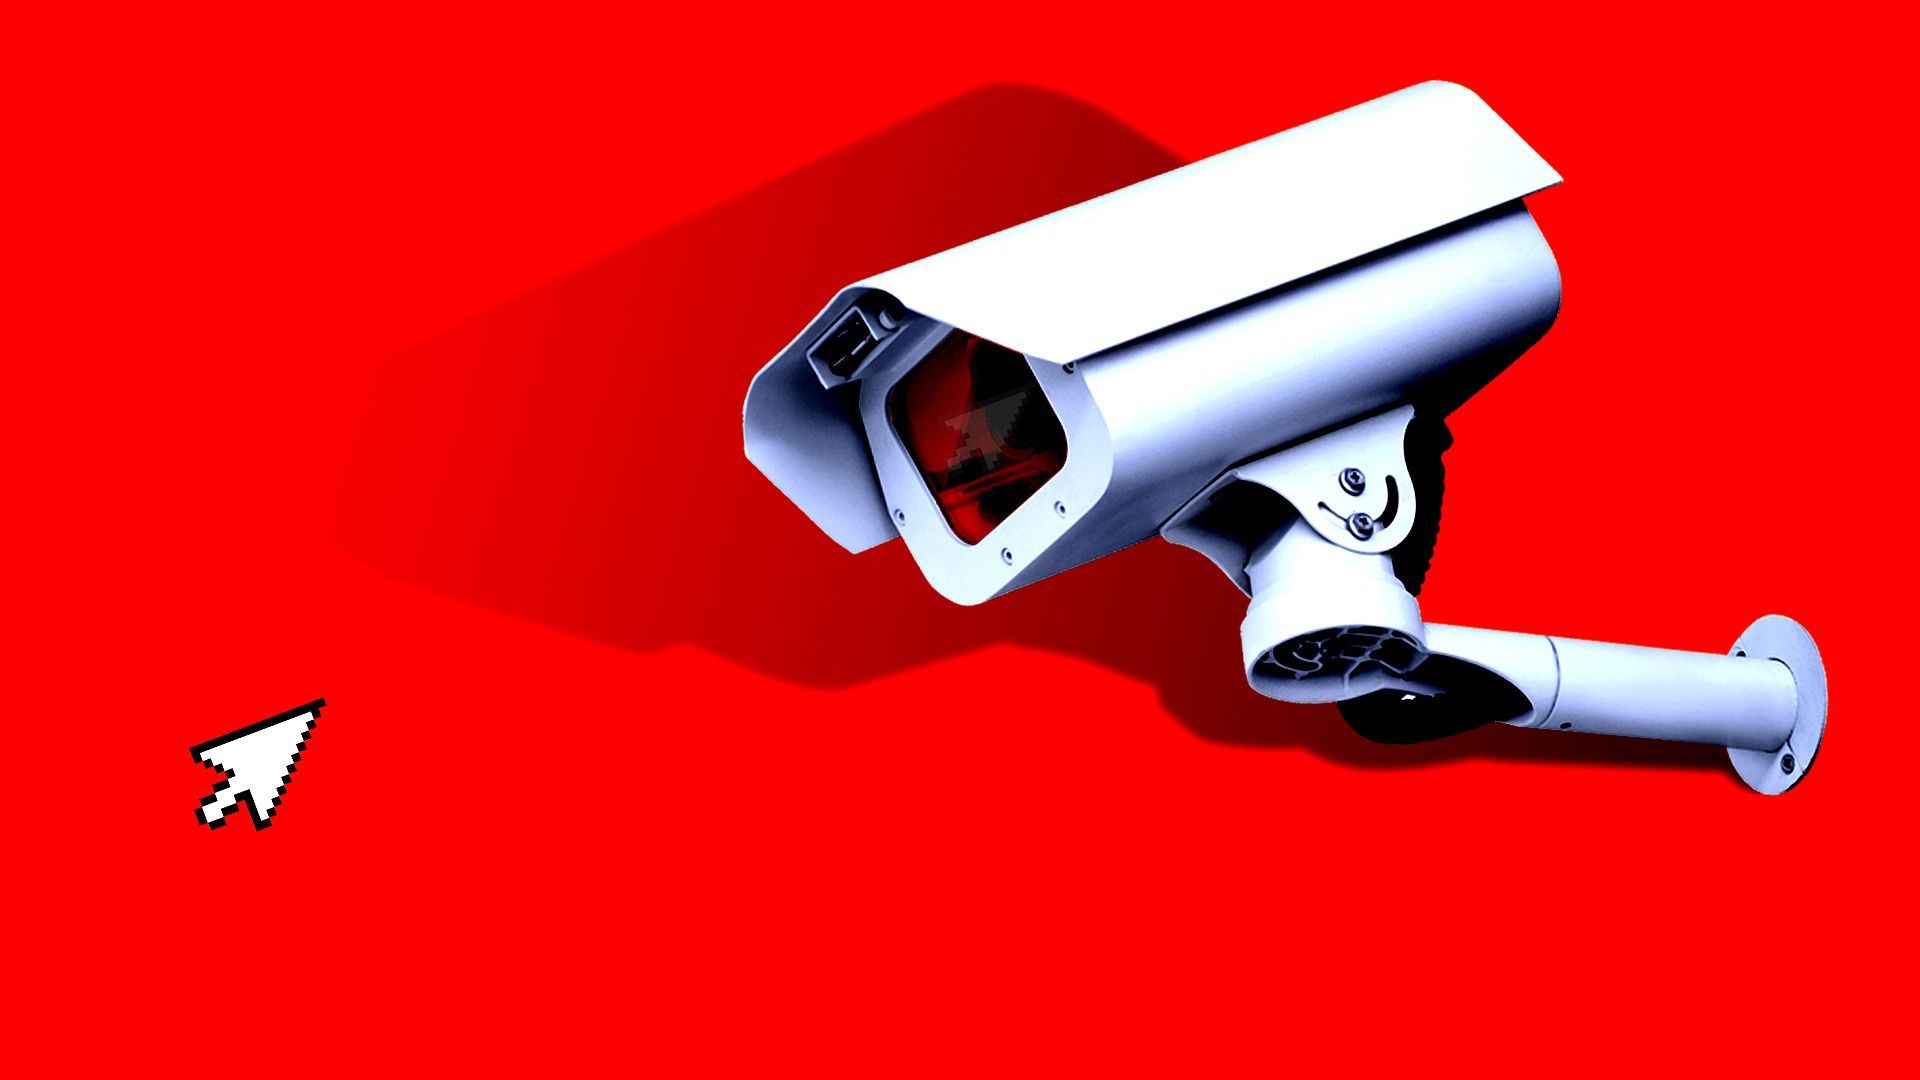 Illustration of a surveillance camera